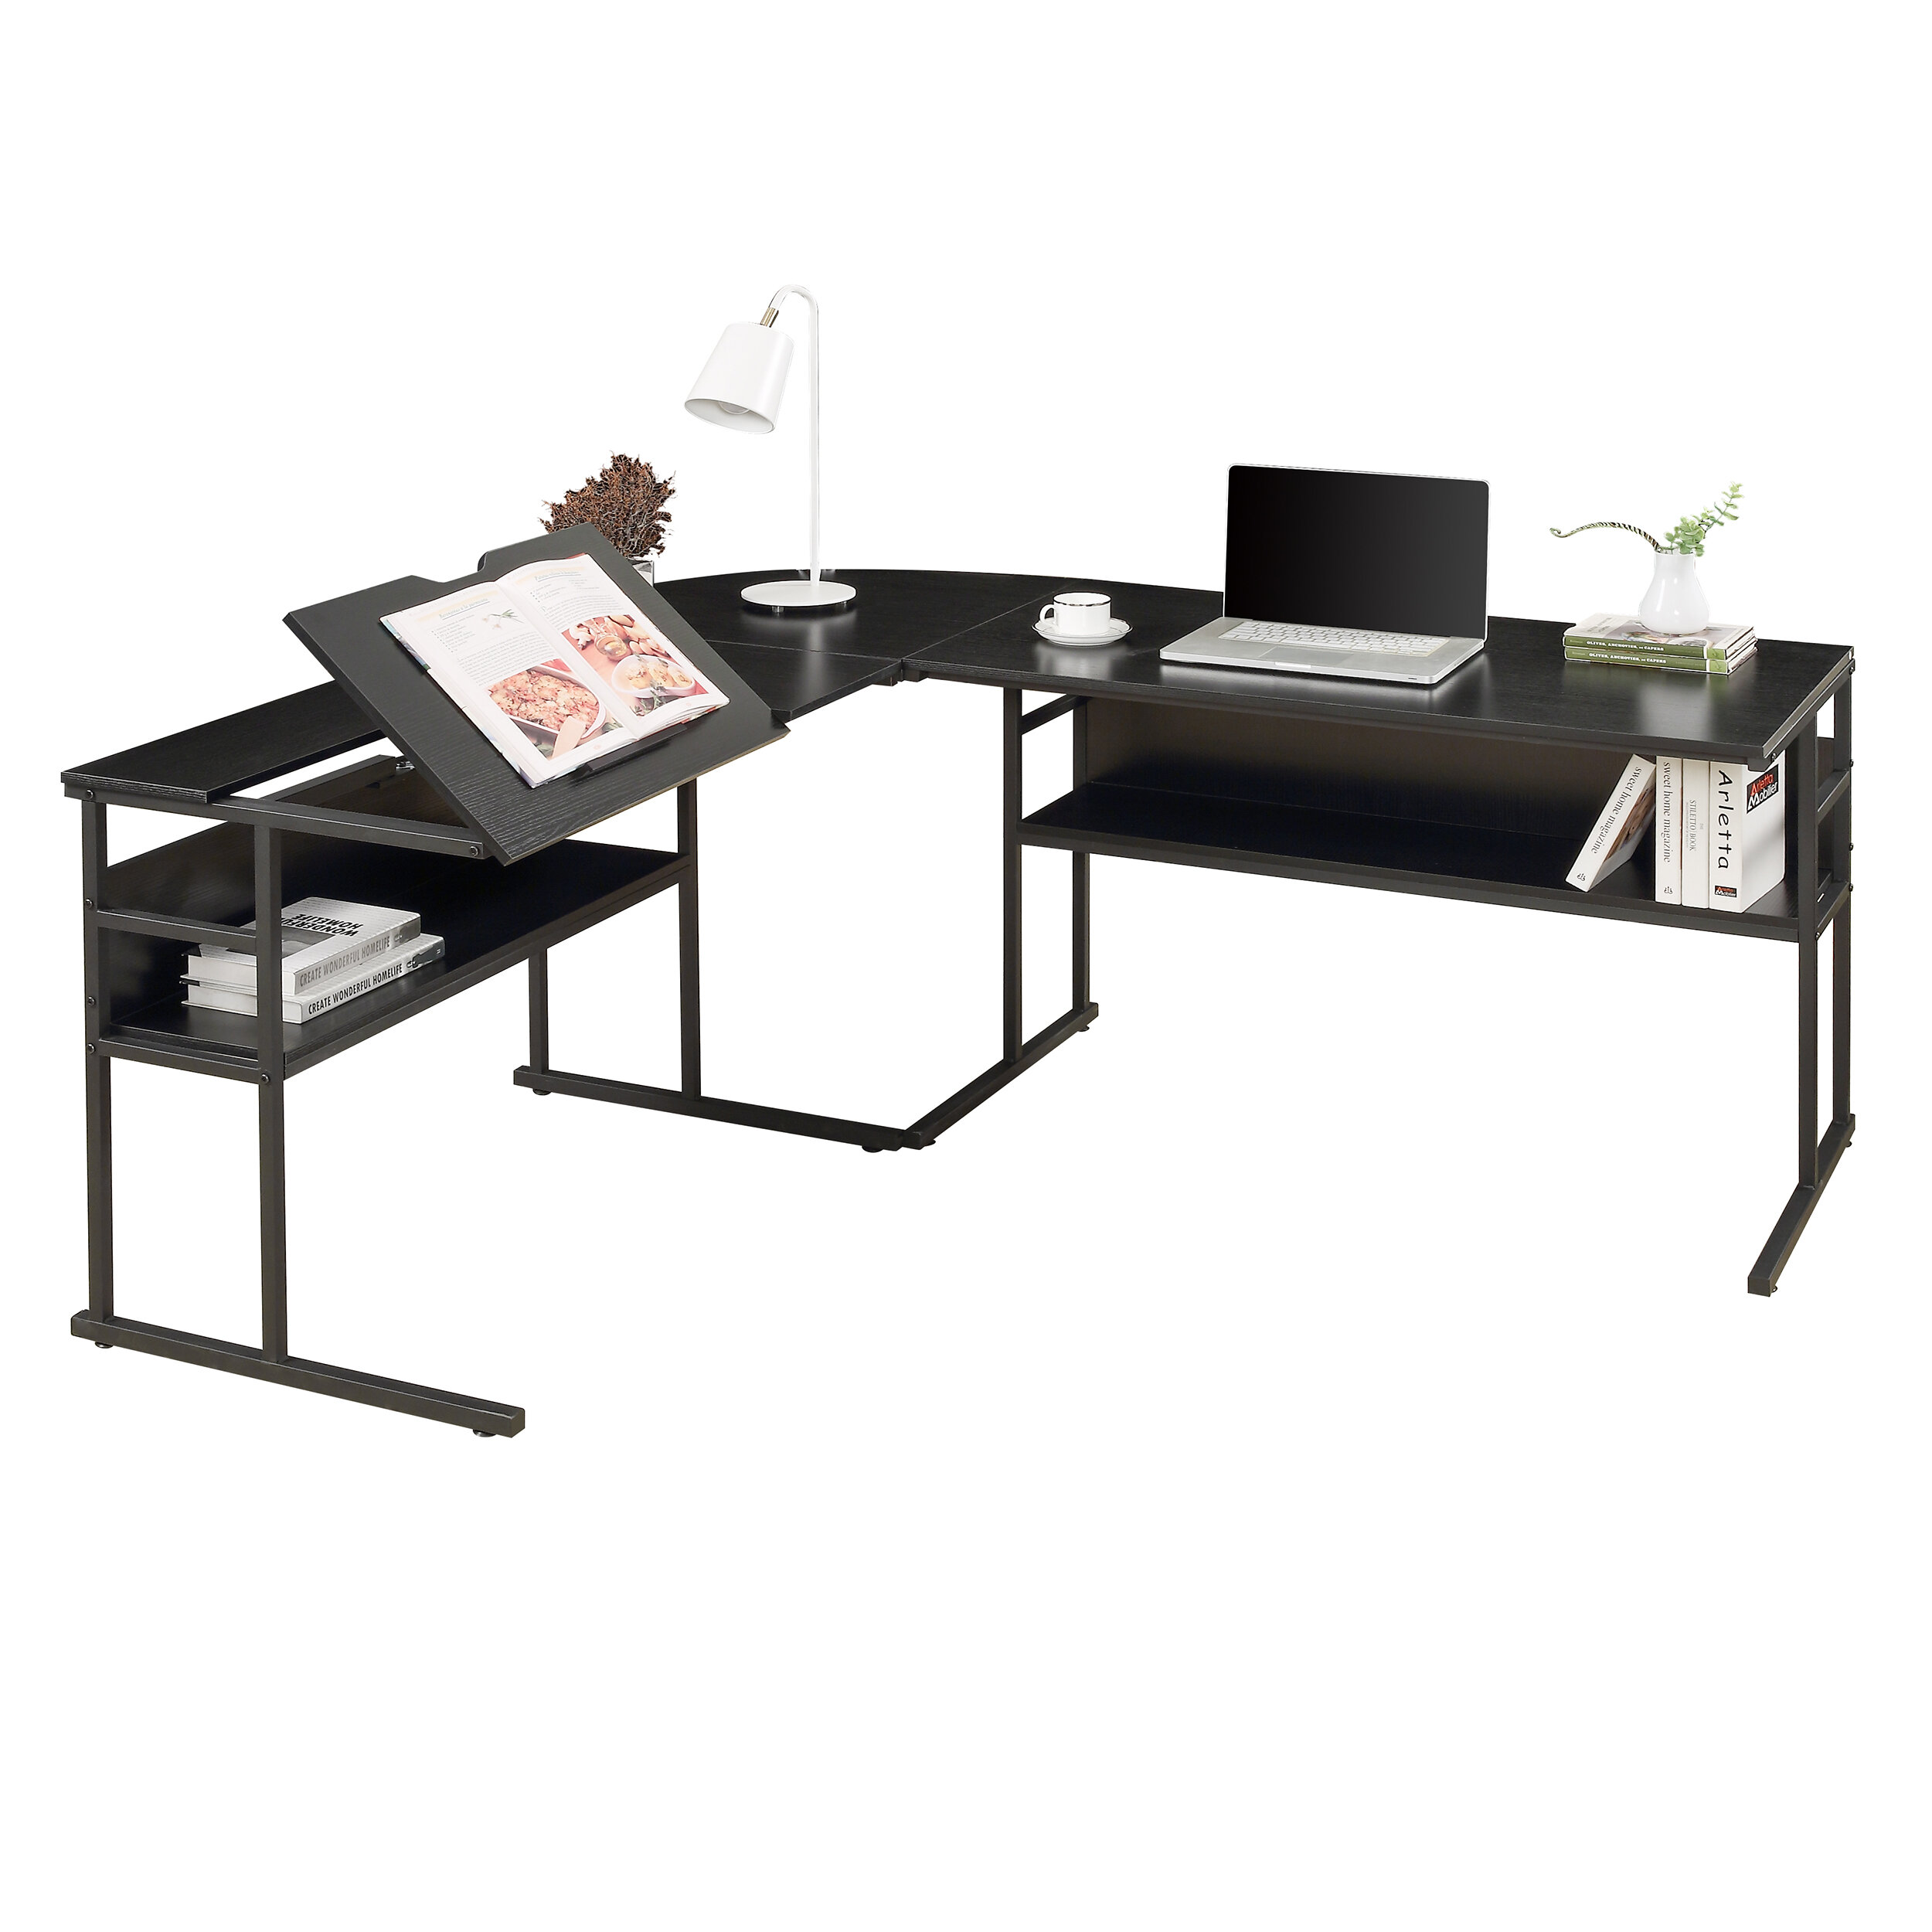 Details about   L-Shaped Computer Desk   w/ Hook Corner Desk Home Office Table Study Workstation 